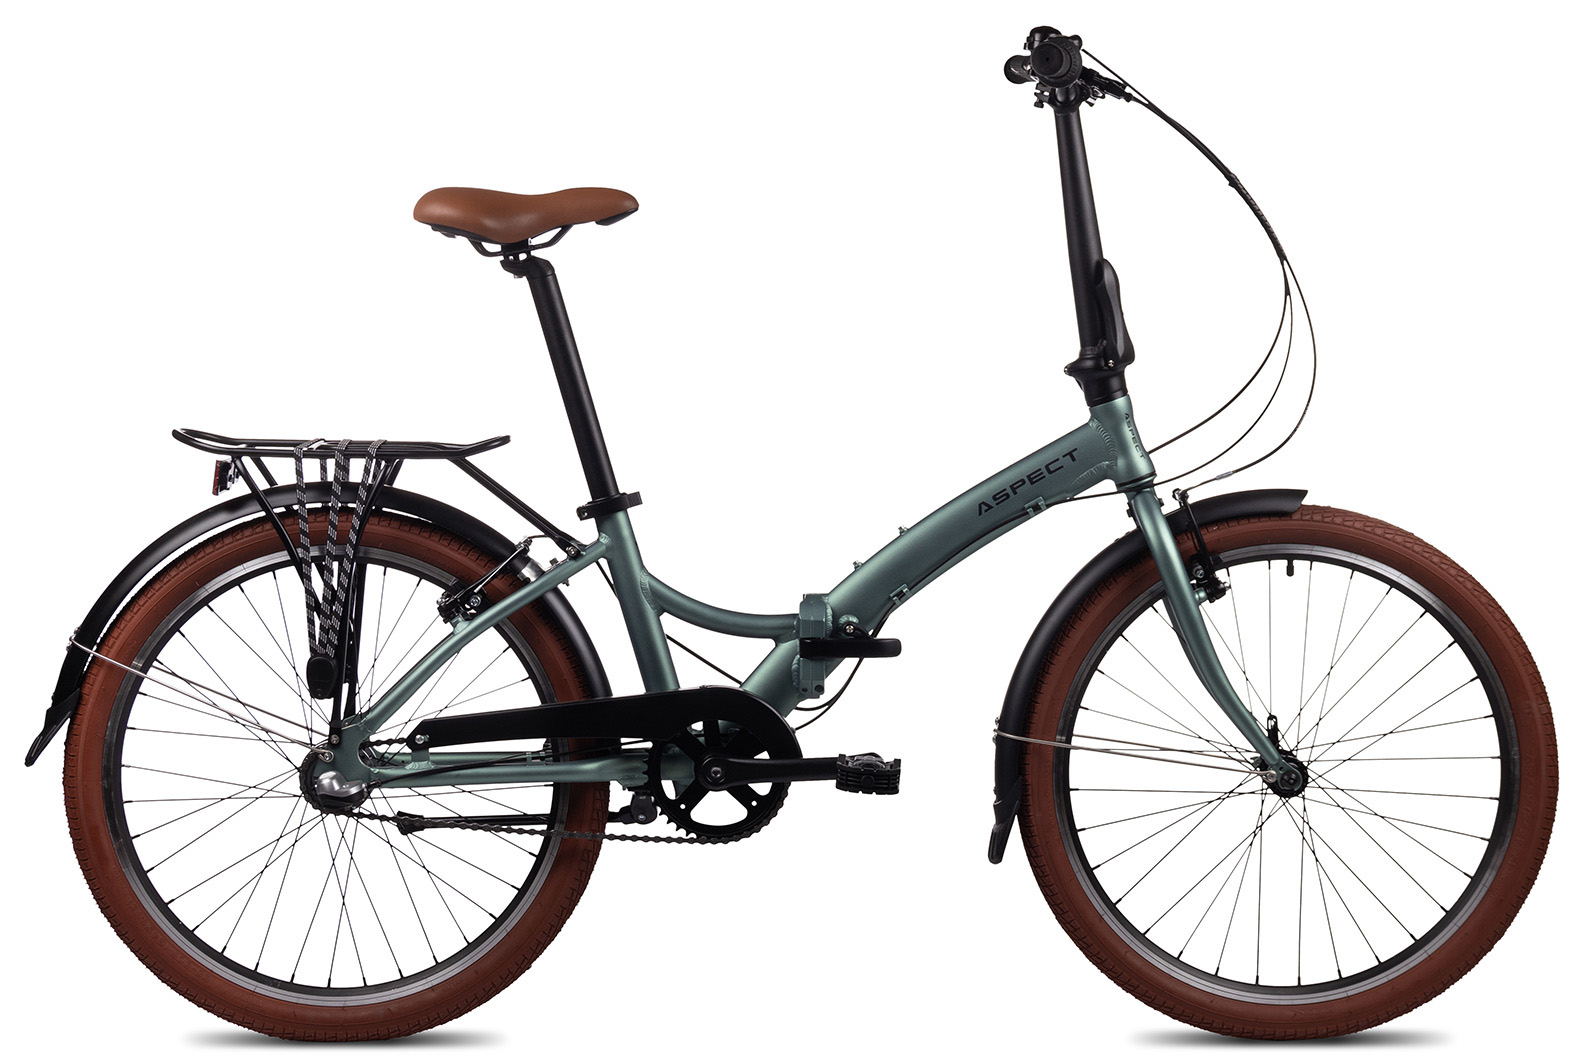  Отзывы о Складном велосипеде Aspect Komodo 3 2022